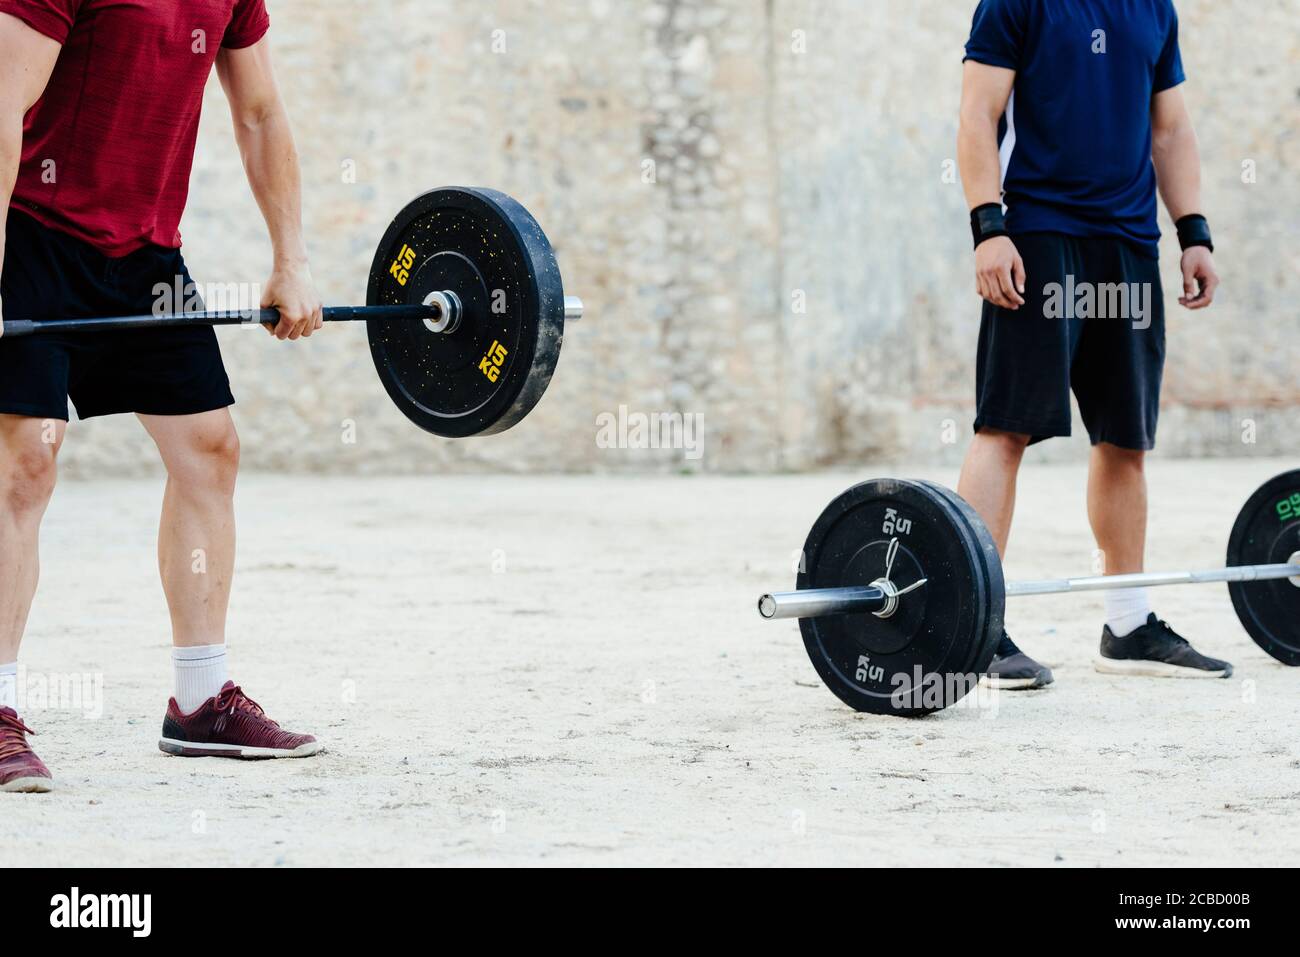 Zwei Gewichtheber heben Gewichte in einer städtischen Umgebung. Stockfoto